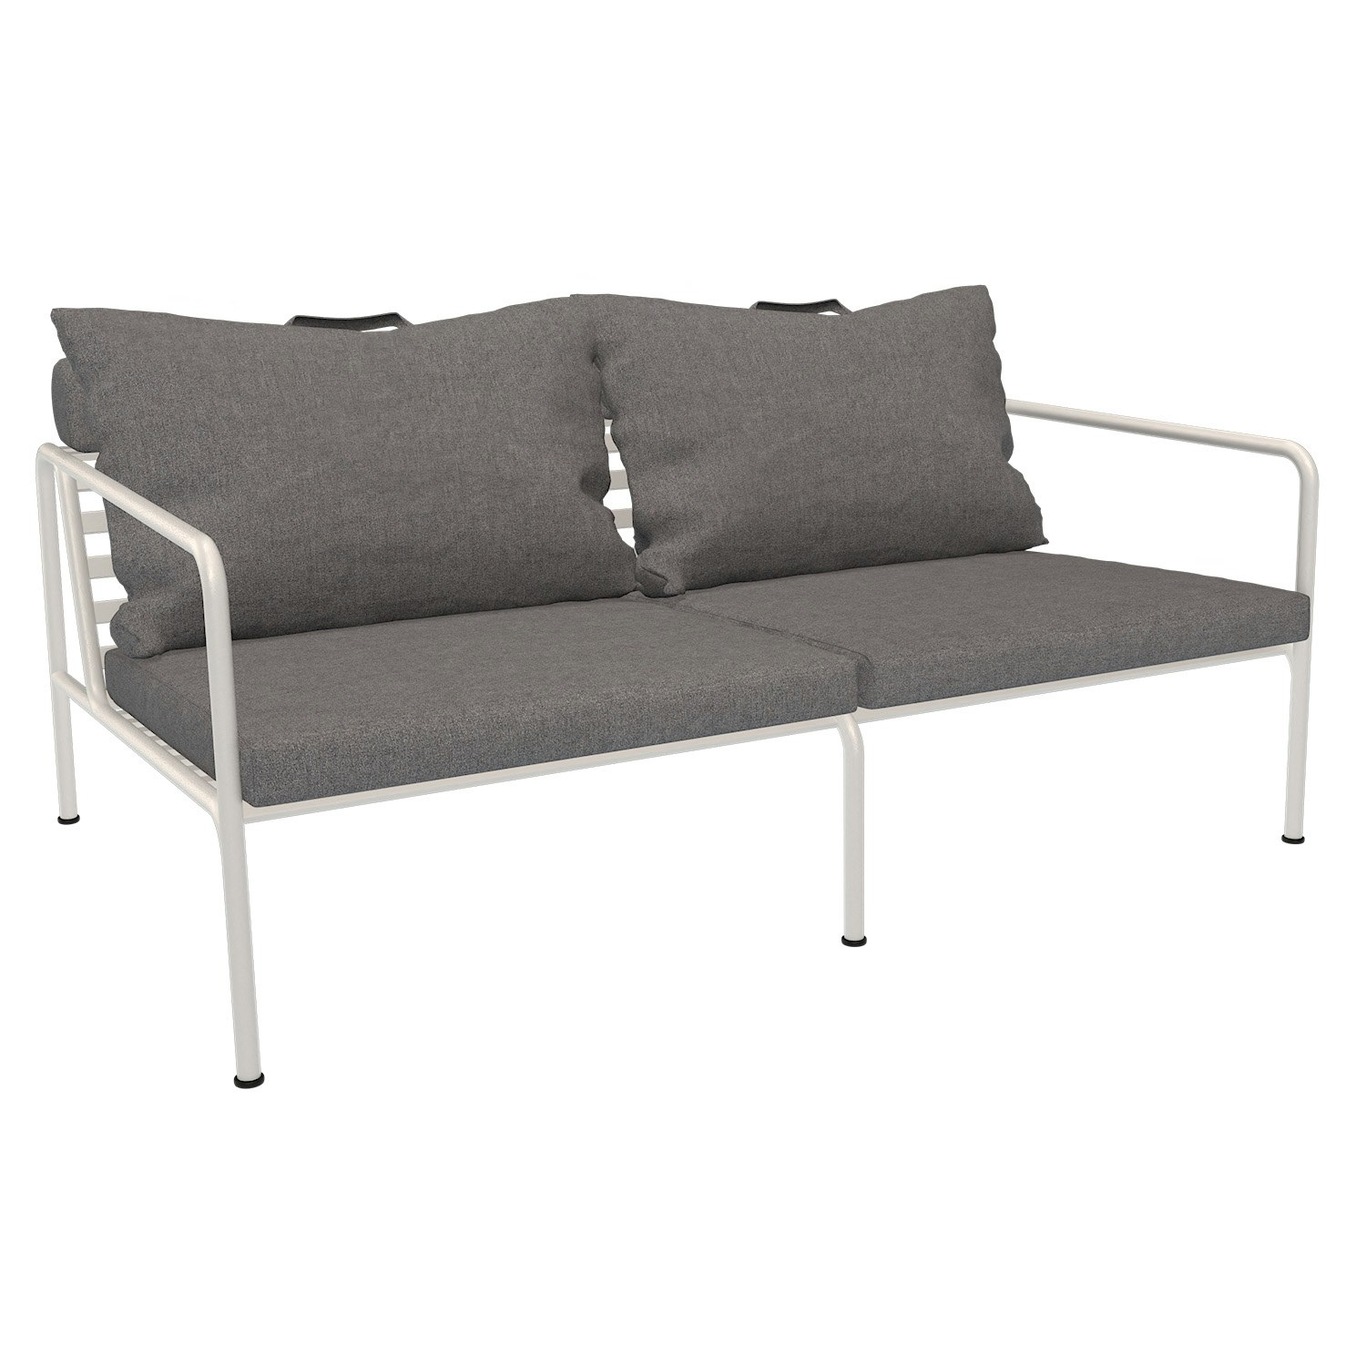 Avon 2-Seter Sofa, Slate / Muted White